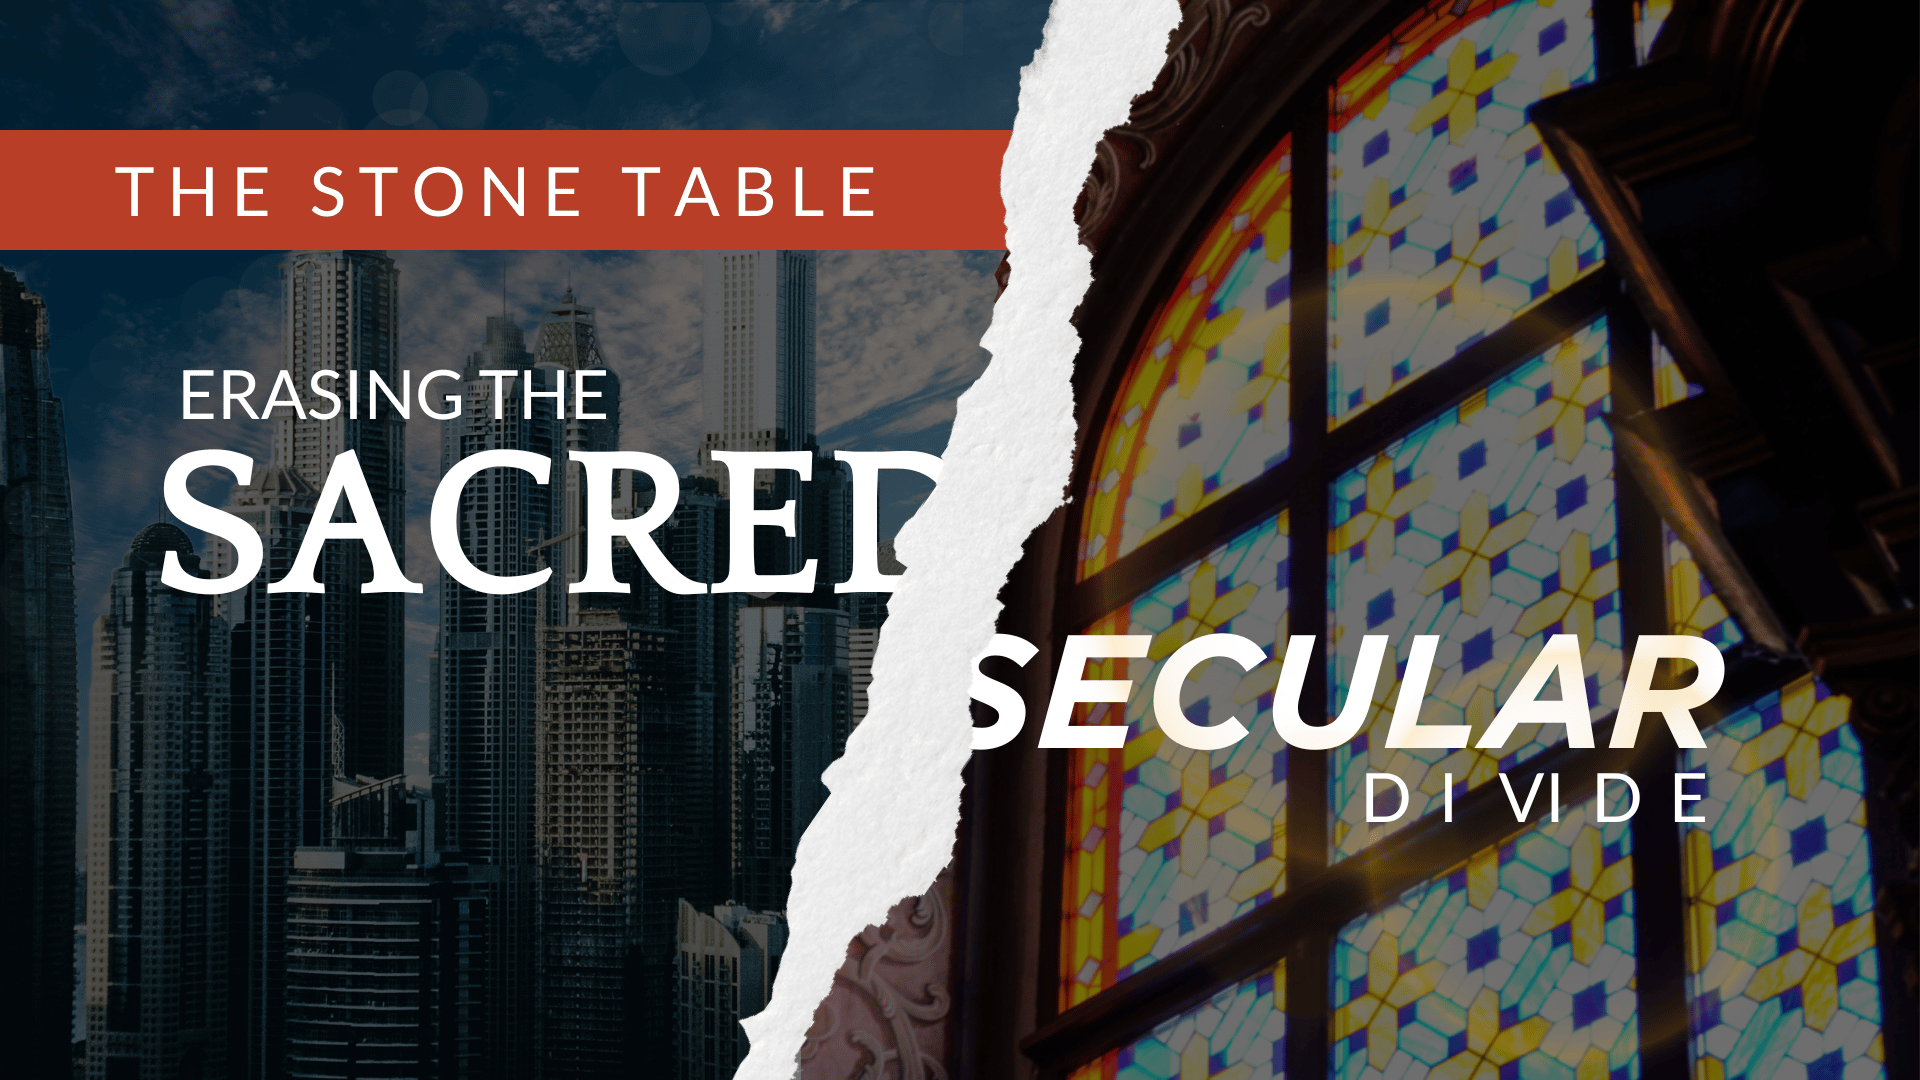 Erasing The Sacred Secular Divide